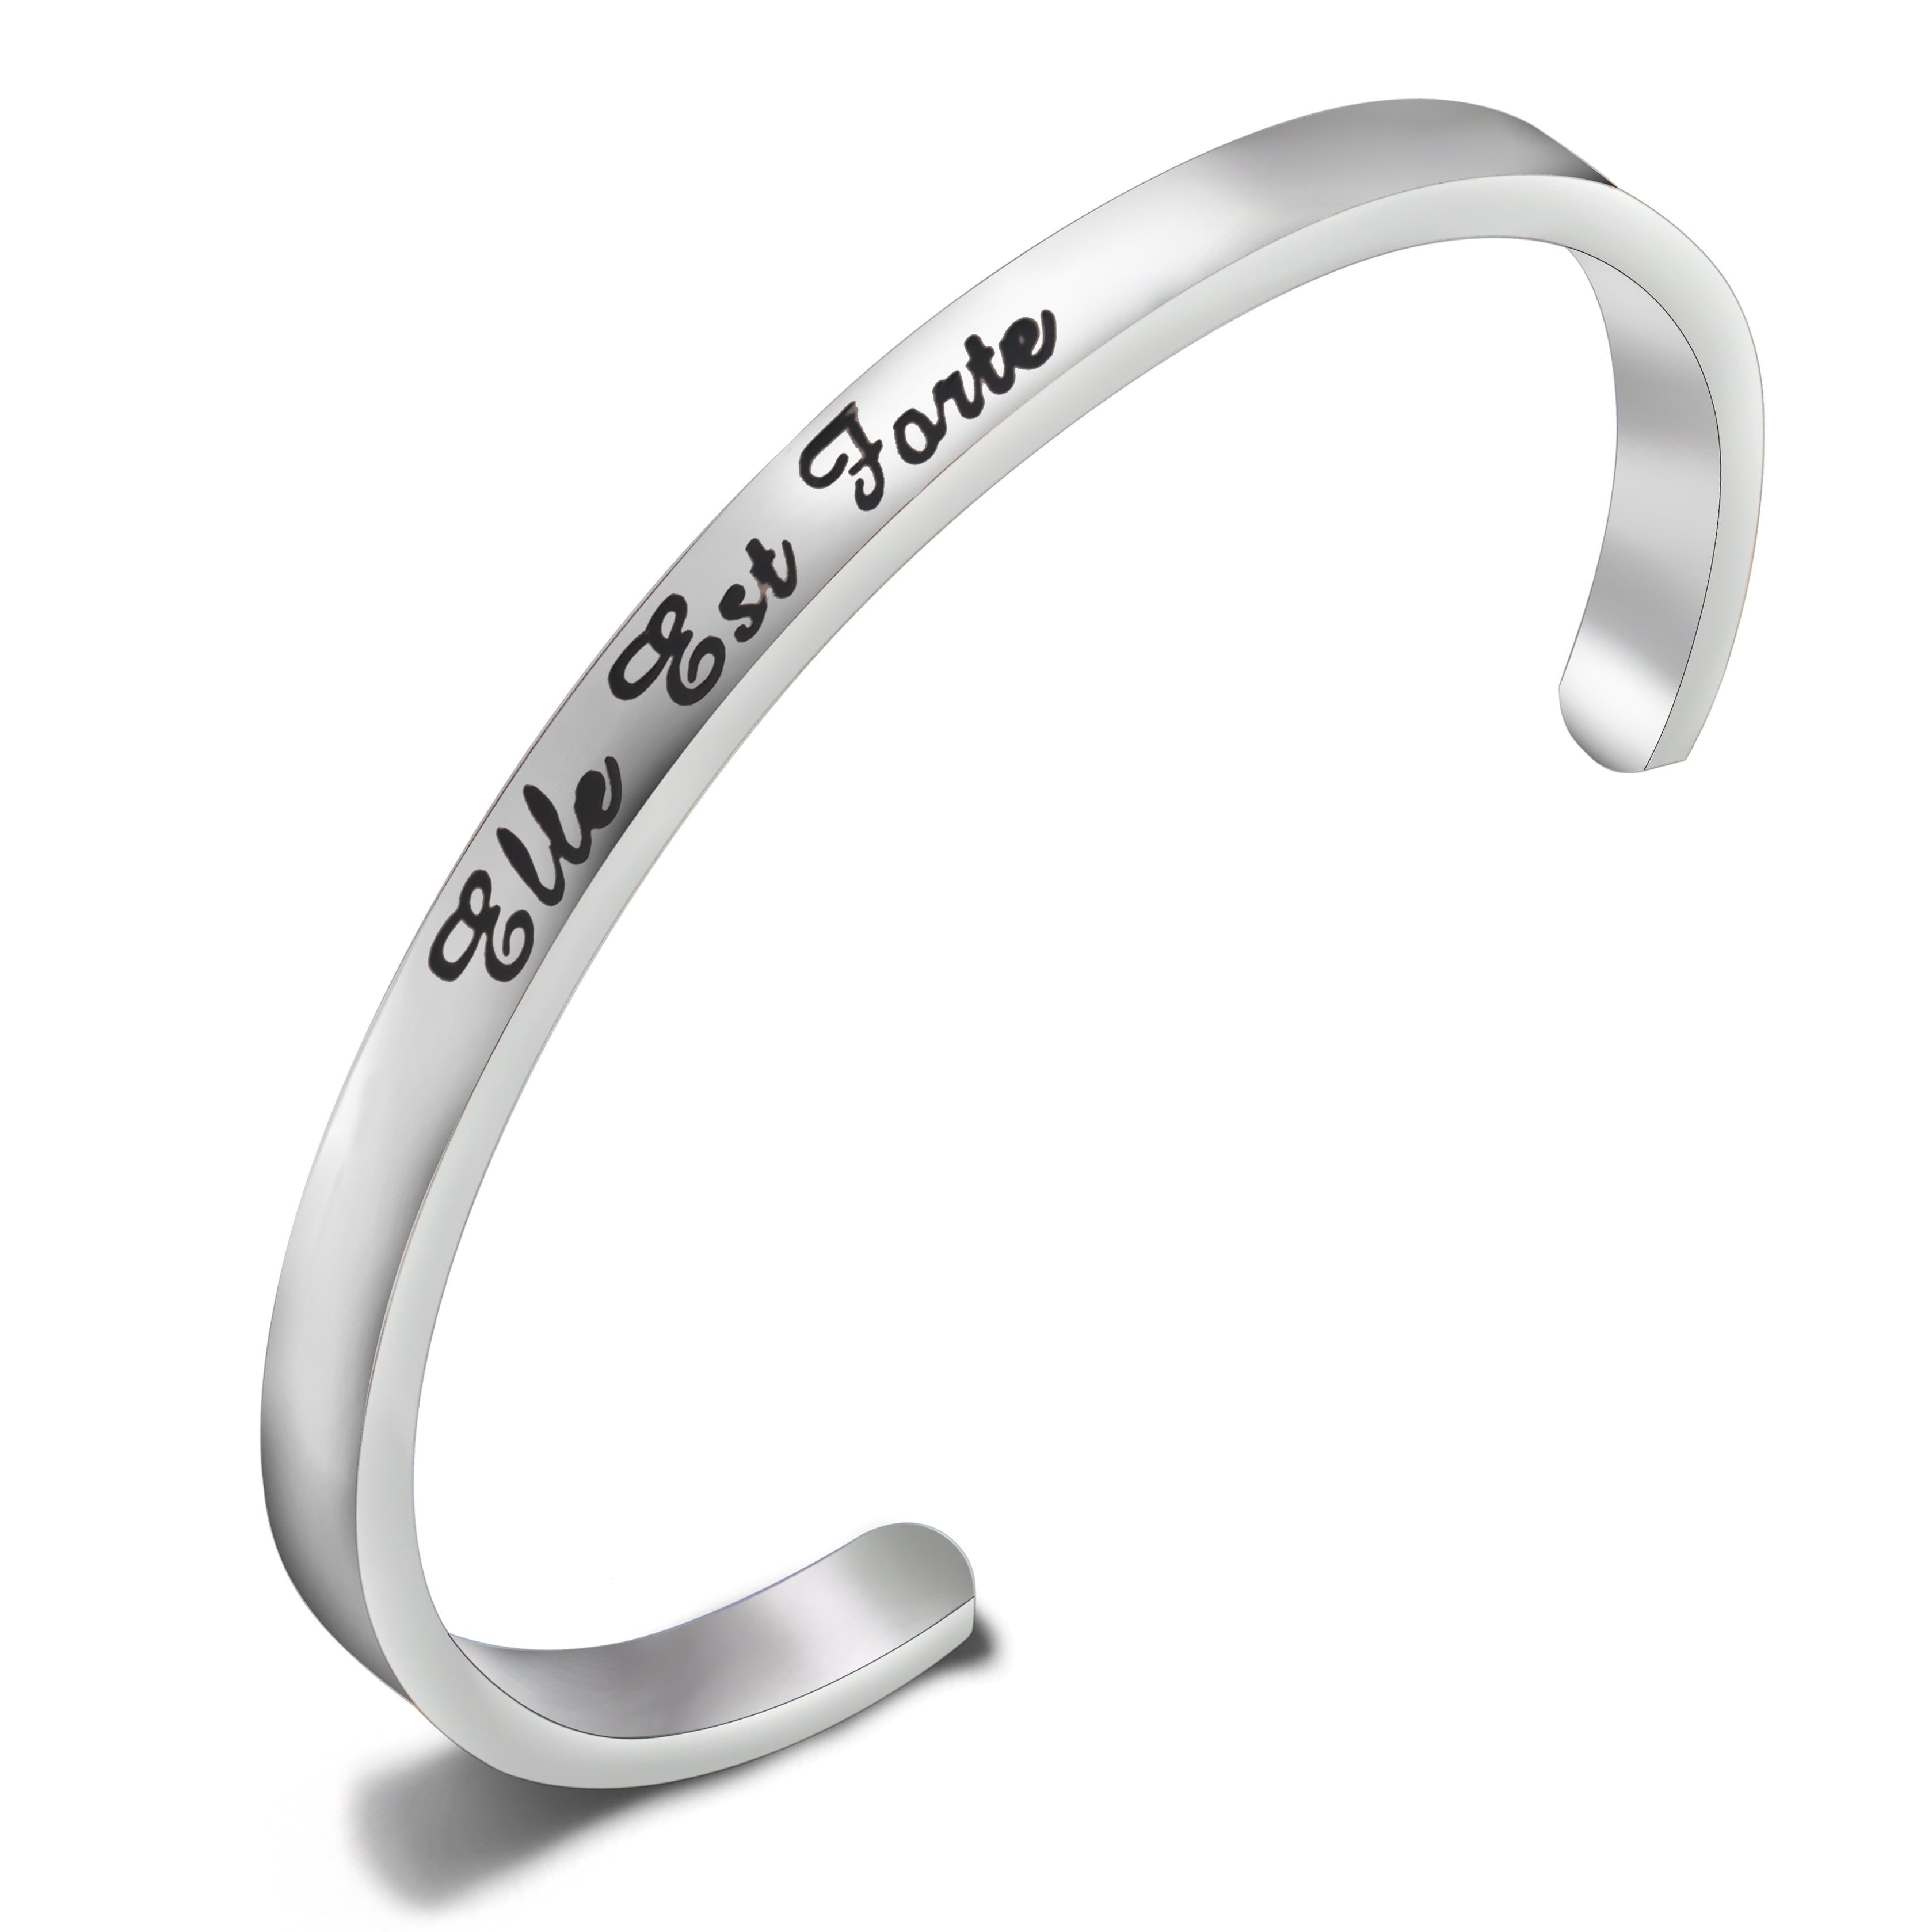 Inspiring Gift Engraved Black Stainless Steel Braided Rope Bracelet Keep It Moving Bracelet Inspirational Bracelet